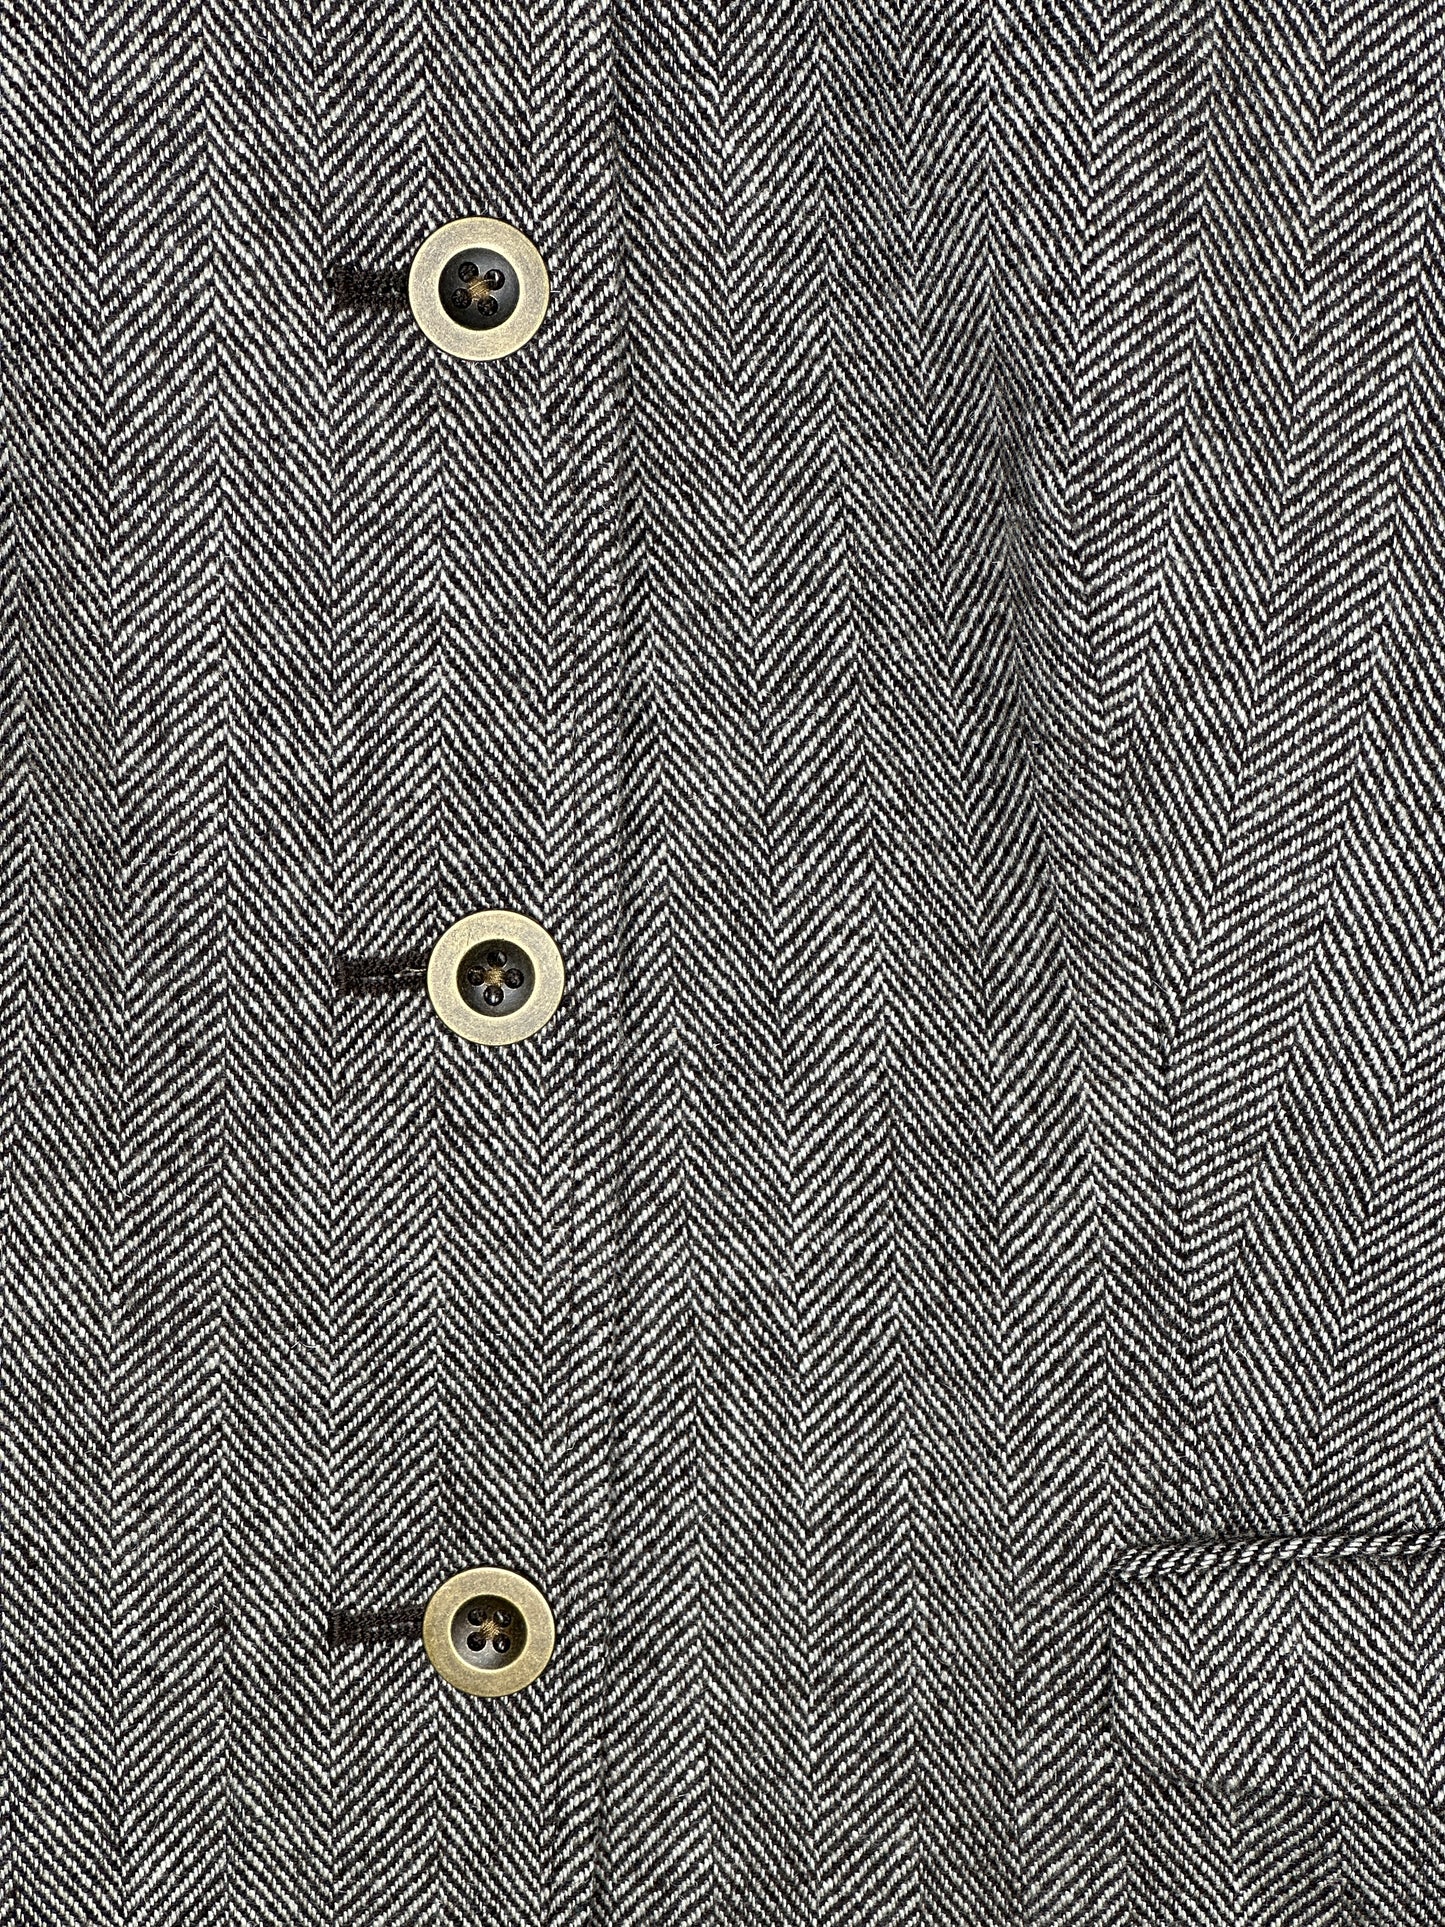 Gap Size 12 Brown Herringbone Tweed Wool Blend Blazer Jacket